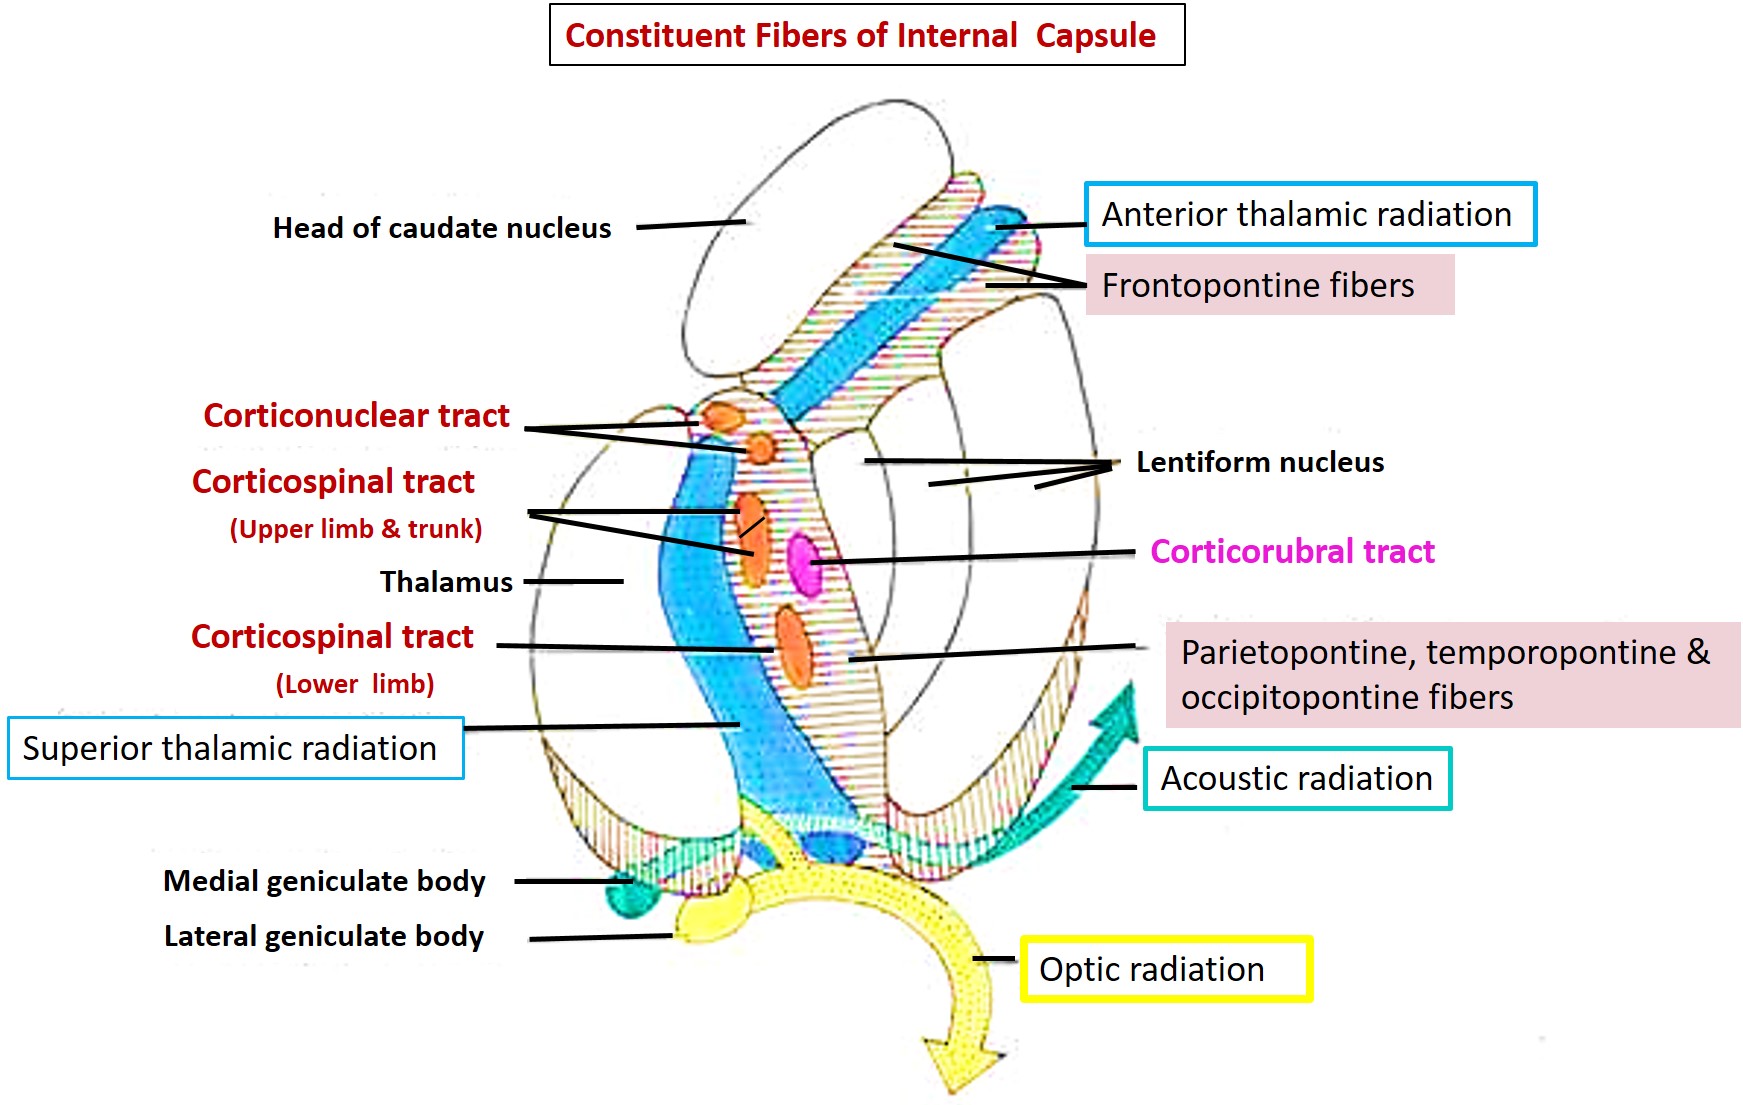 Ascending and descending fibers in internal capsule